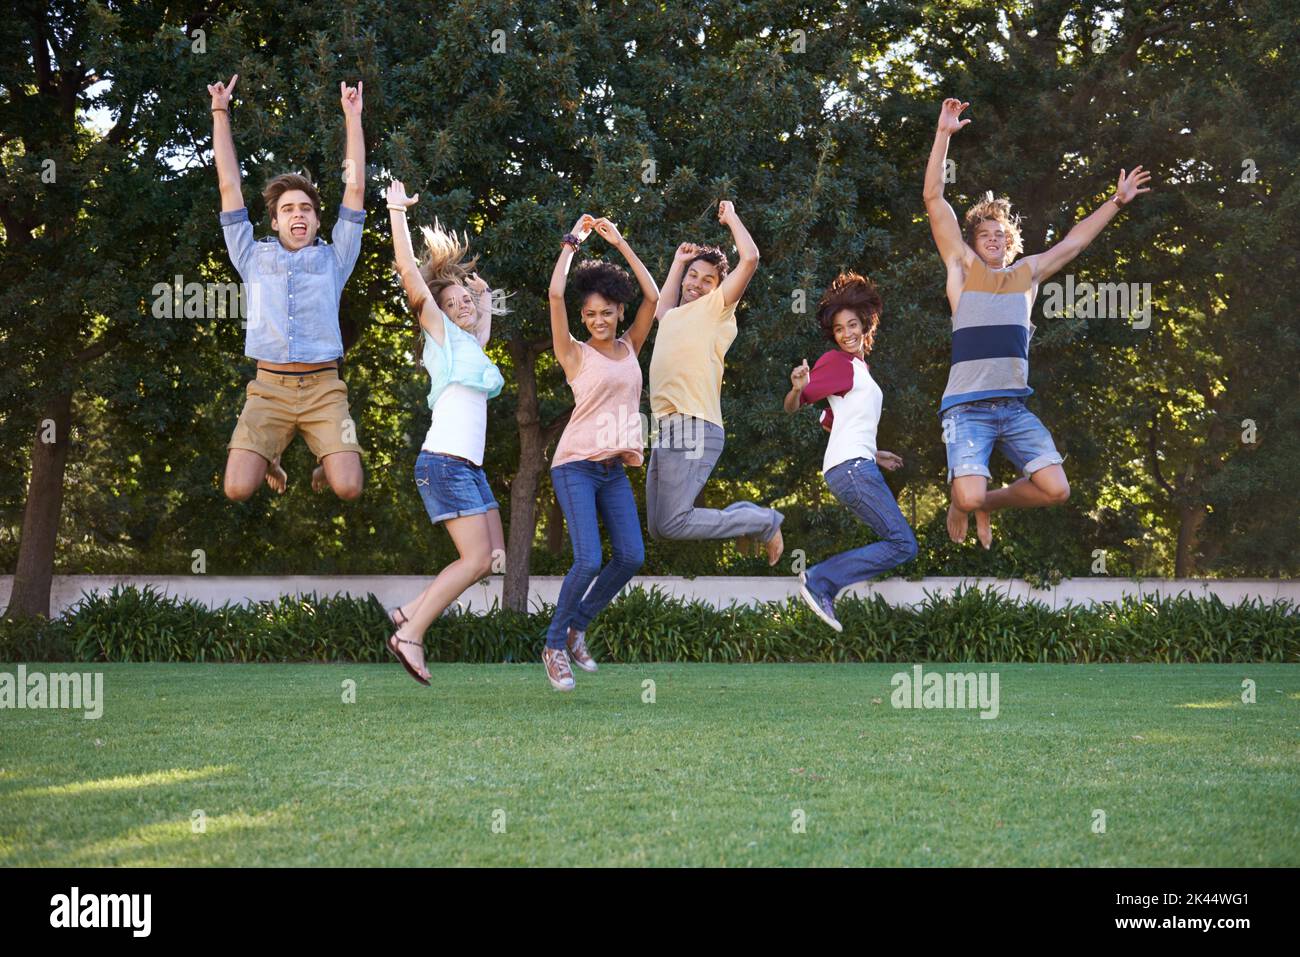 Essere sciocco insieme. Un gruppo di amici che saltano in un parco con gioia. Foto Stock